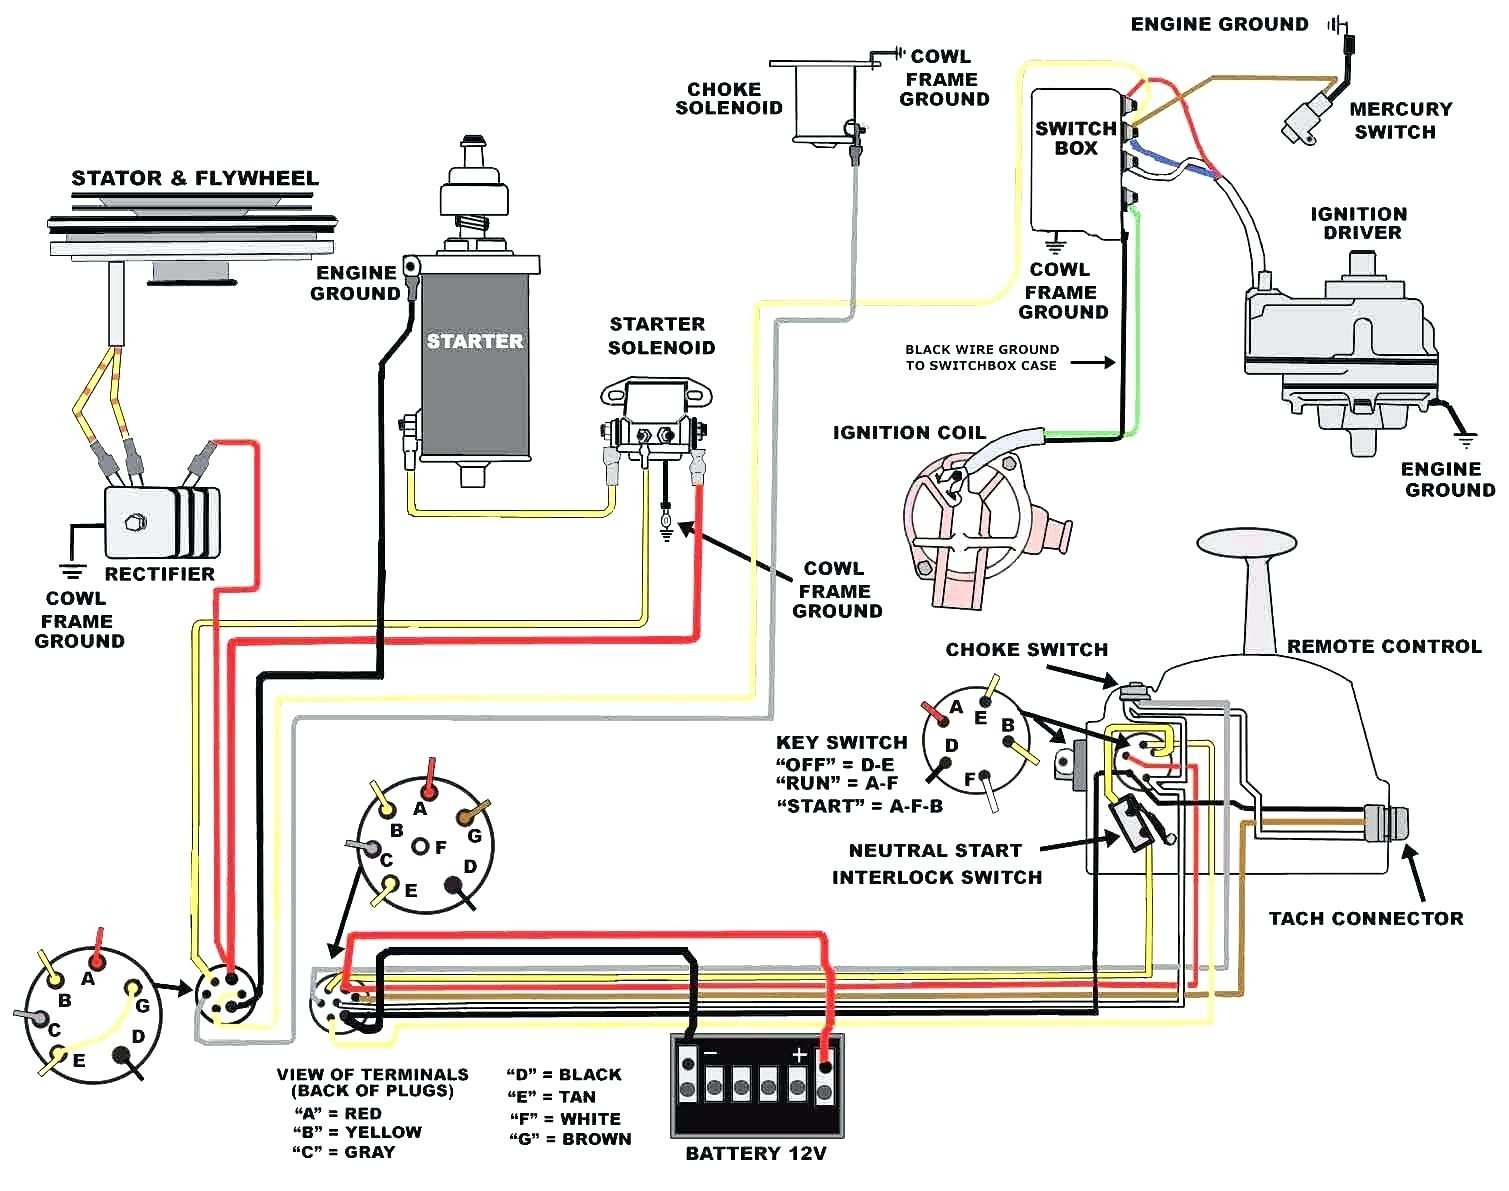 Ignition Circuit Diagram 1